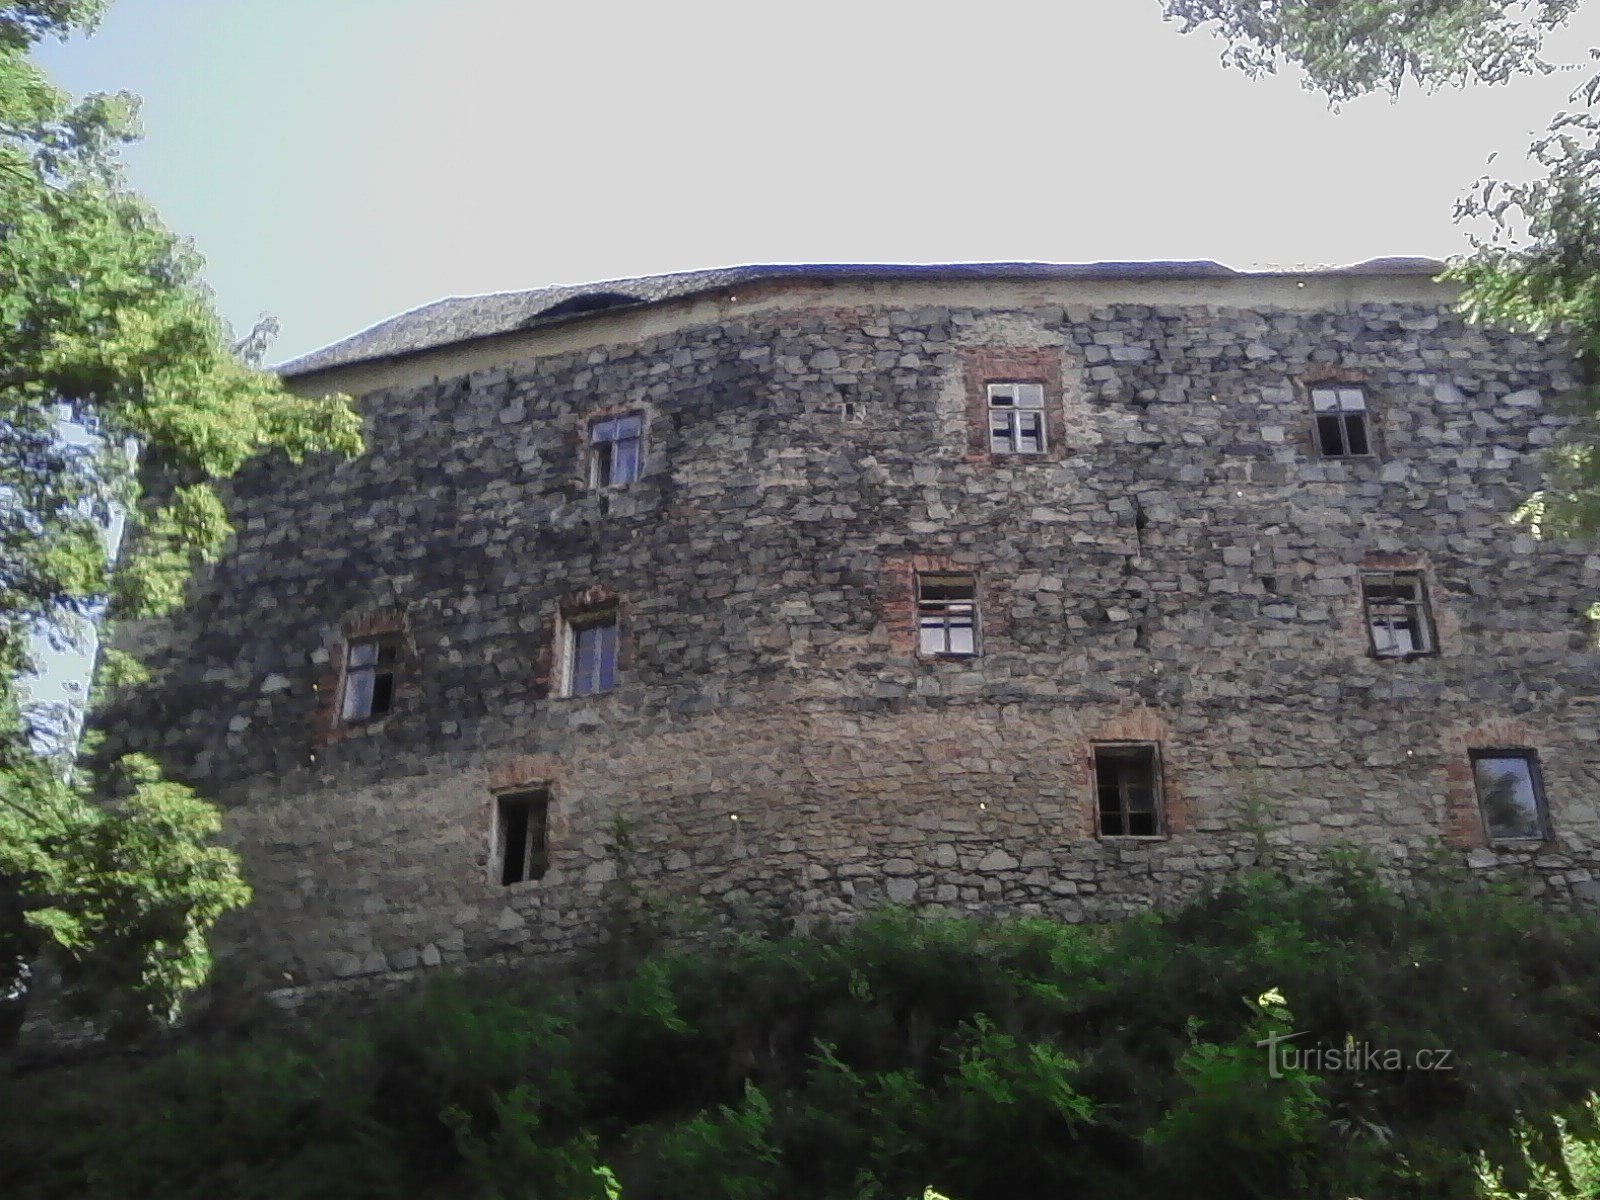 1. Fortaleza da Nuvem. Fortaleza medieval do século XIV. com fortificações palacianas, ergue-se numa colina